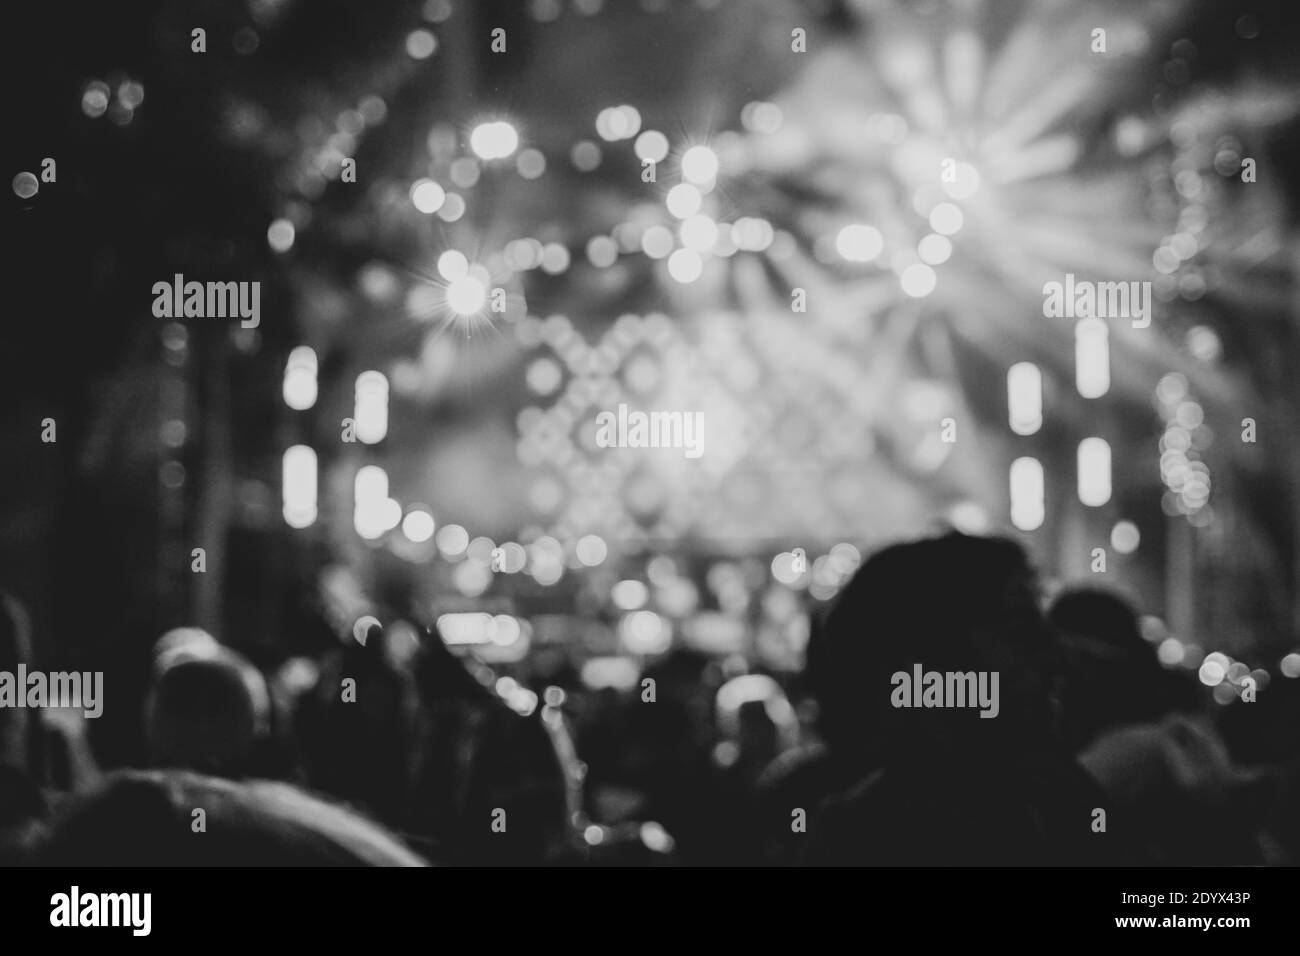 Fête de carnaval , nuit blurry boîte de nuit musique danse son , Party People flou arrière-plan. Image en noir et blanc. Banque D'Images